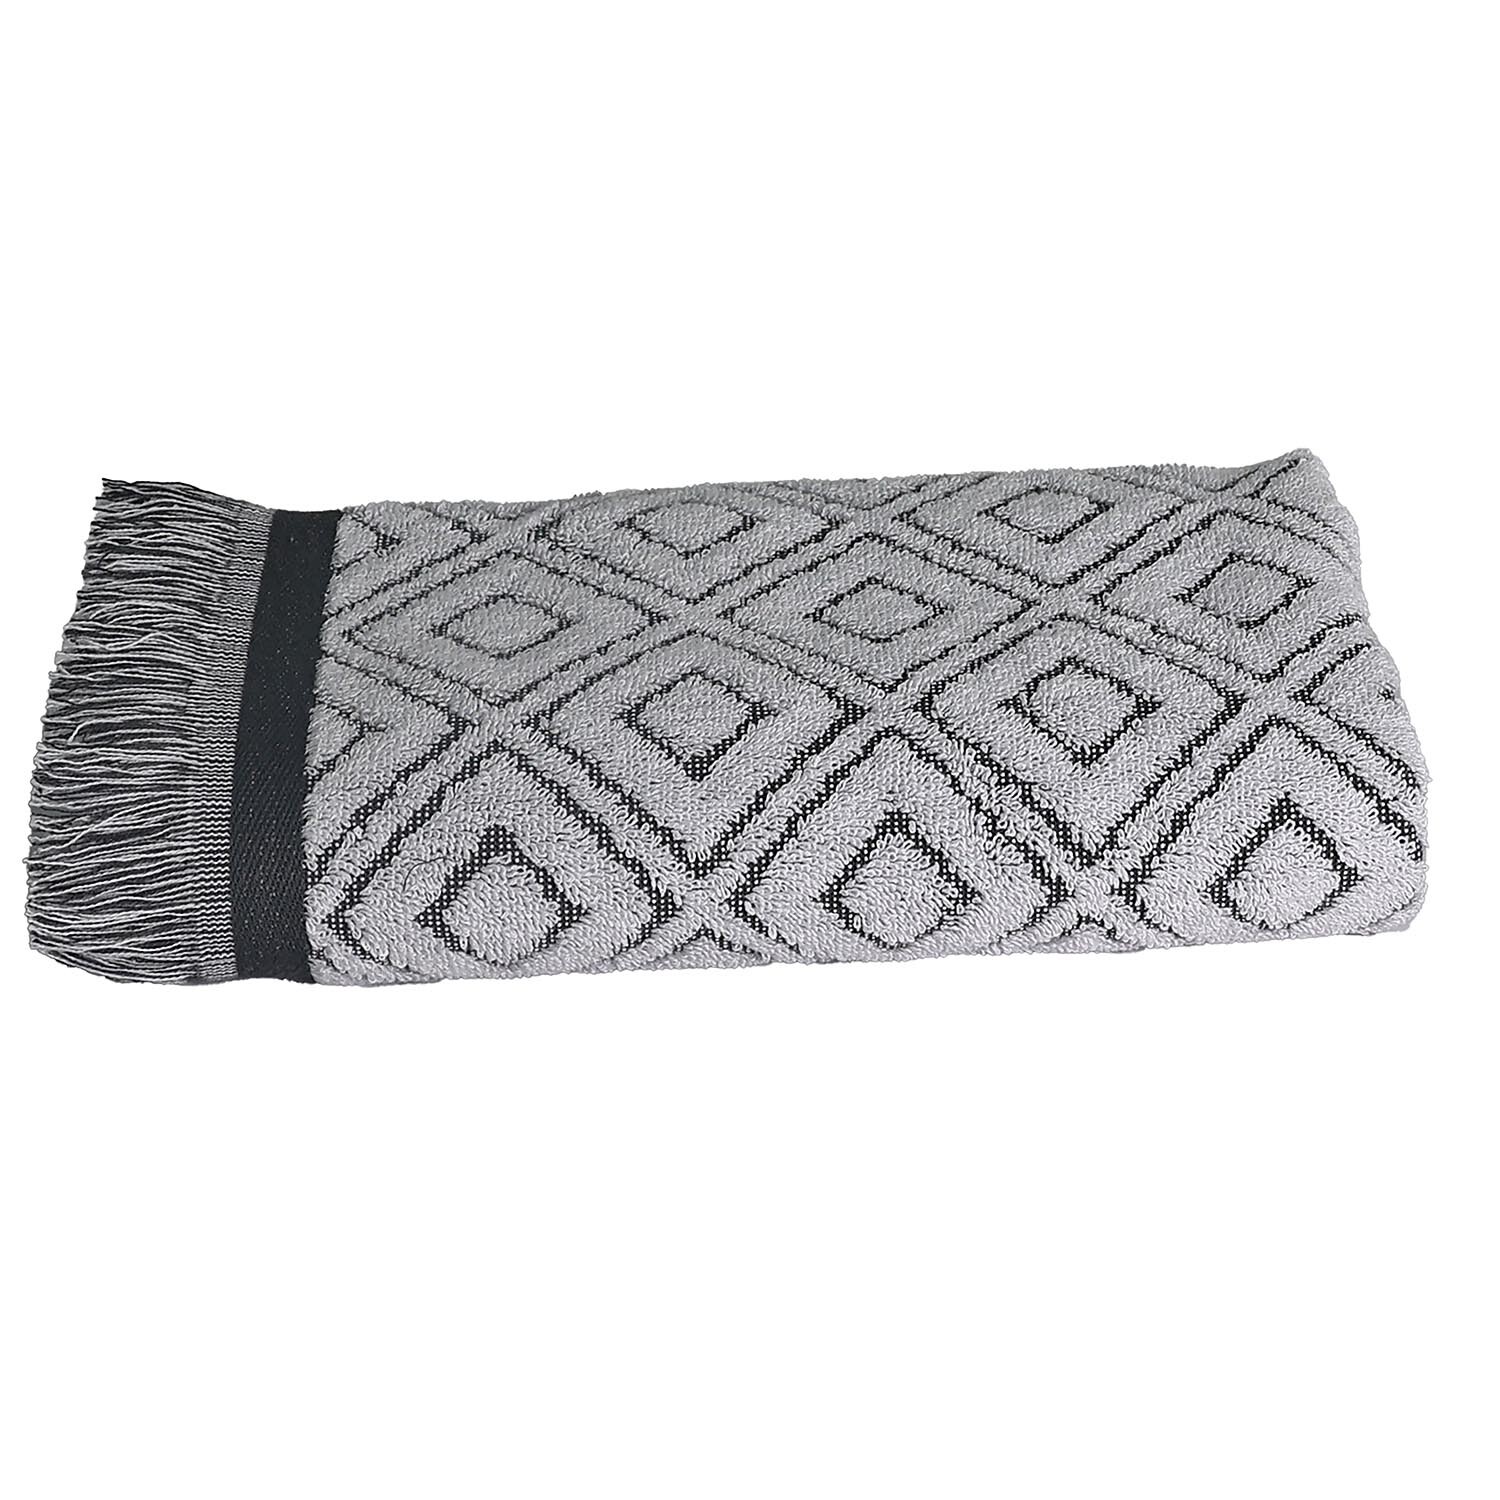 Diamond Fringe Hand Towel - Grey Image 1